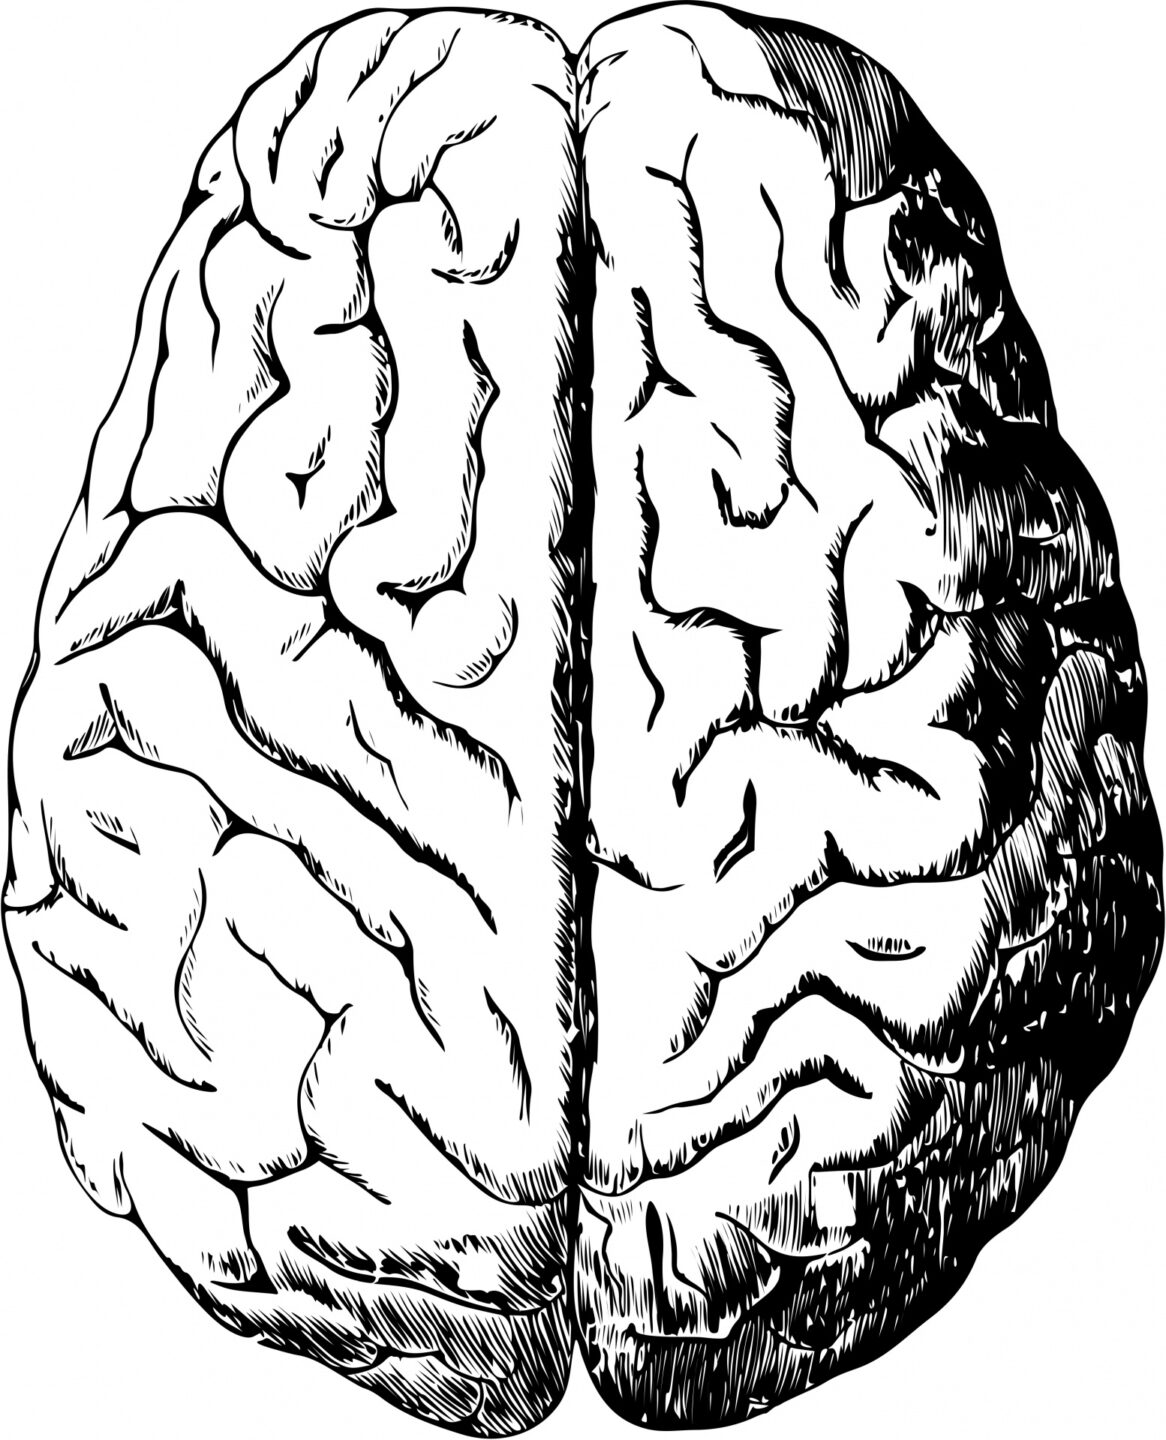 human-brain-1443447004ROS